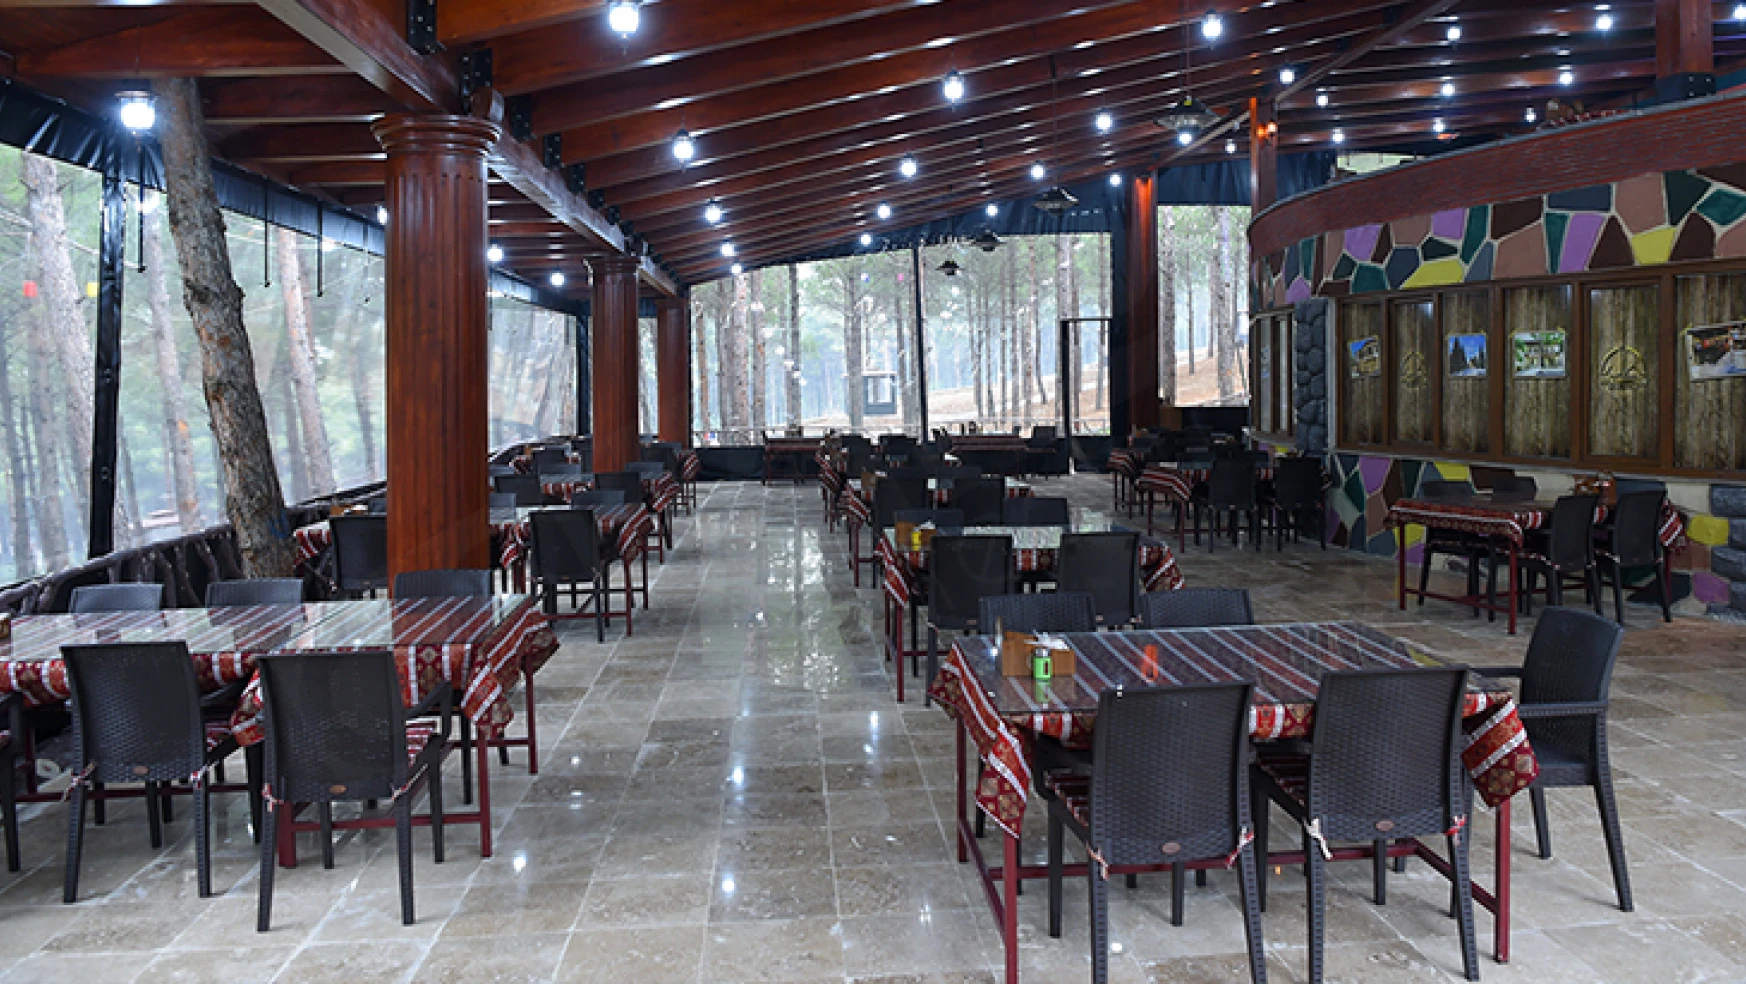 Dulkadiroğlu'nun kente kazandırdığı Heyecan Kafe, yoğun ilgi görüyor